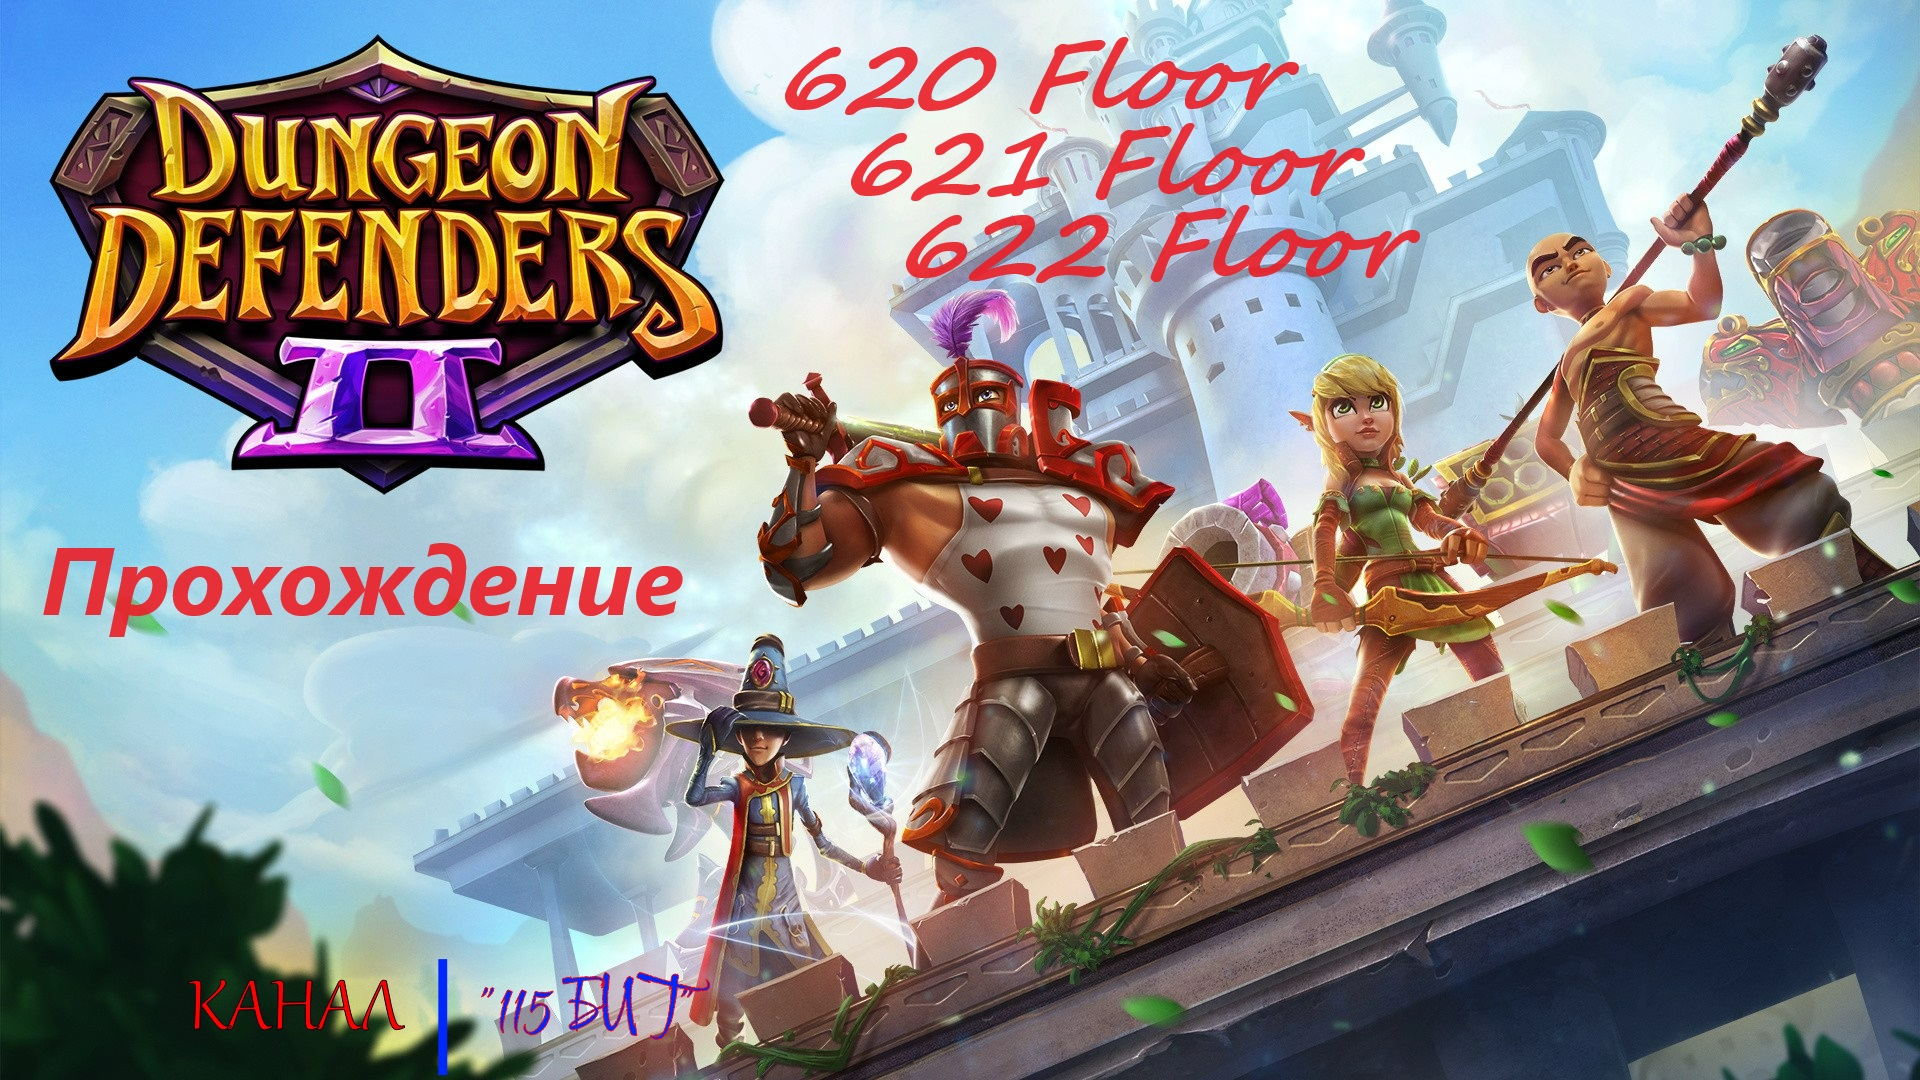 Dungeon Defenders 2. 620, 621 and 622 floors. Быстрое прохождение за 50 минут.